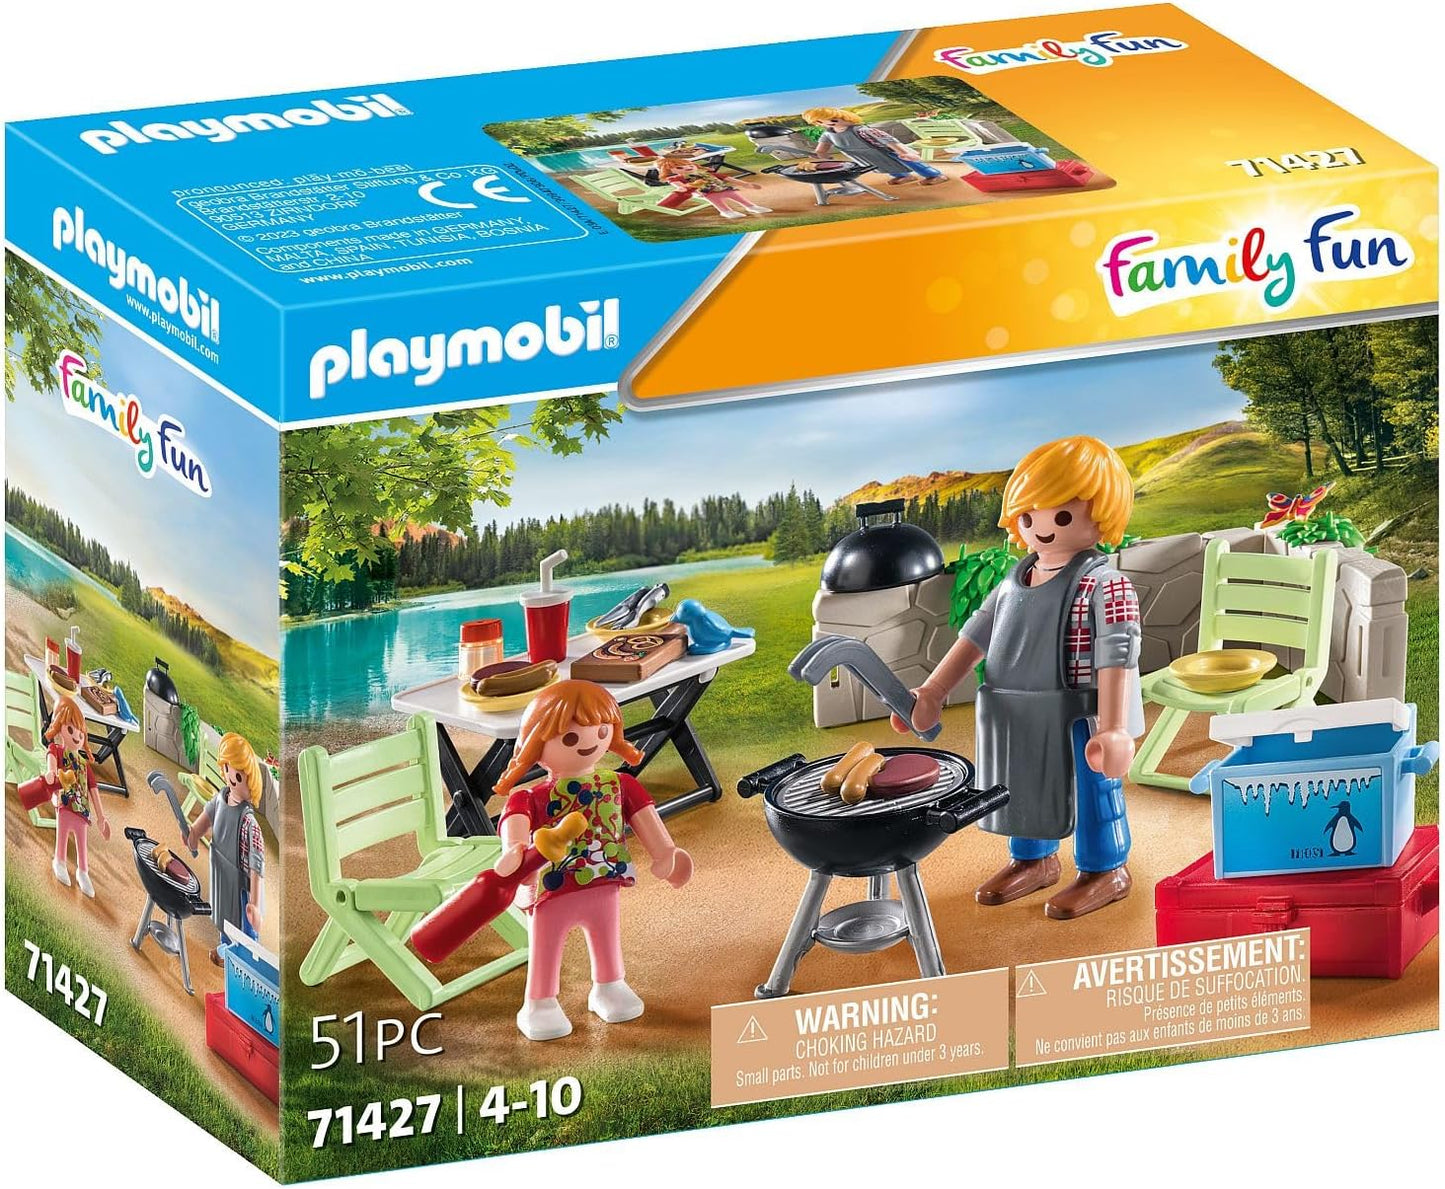 Playmobil 71427 Churrasco divertido para a família, brinquedo ao ar livre e dramatização imaginativa, conjuntos adequados para crianças de 4 anos ou mais